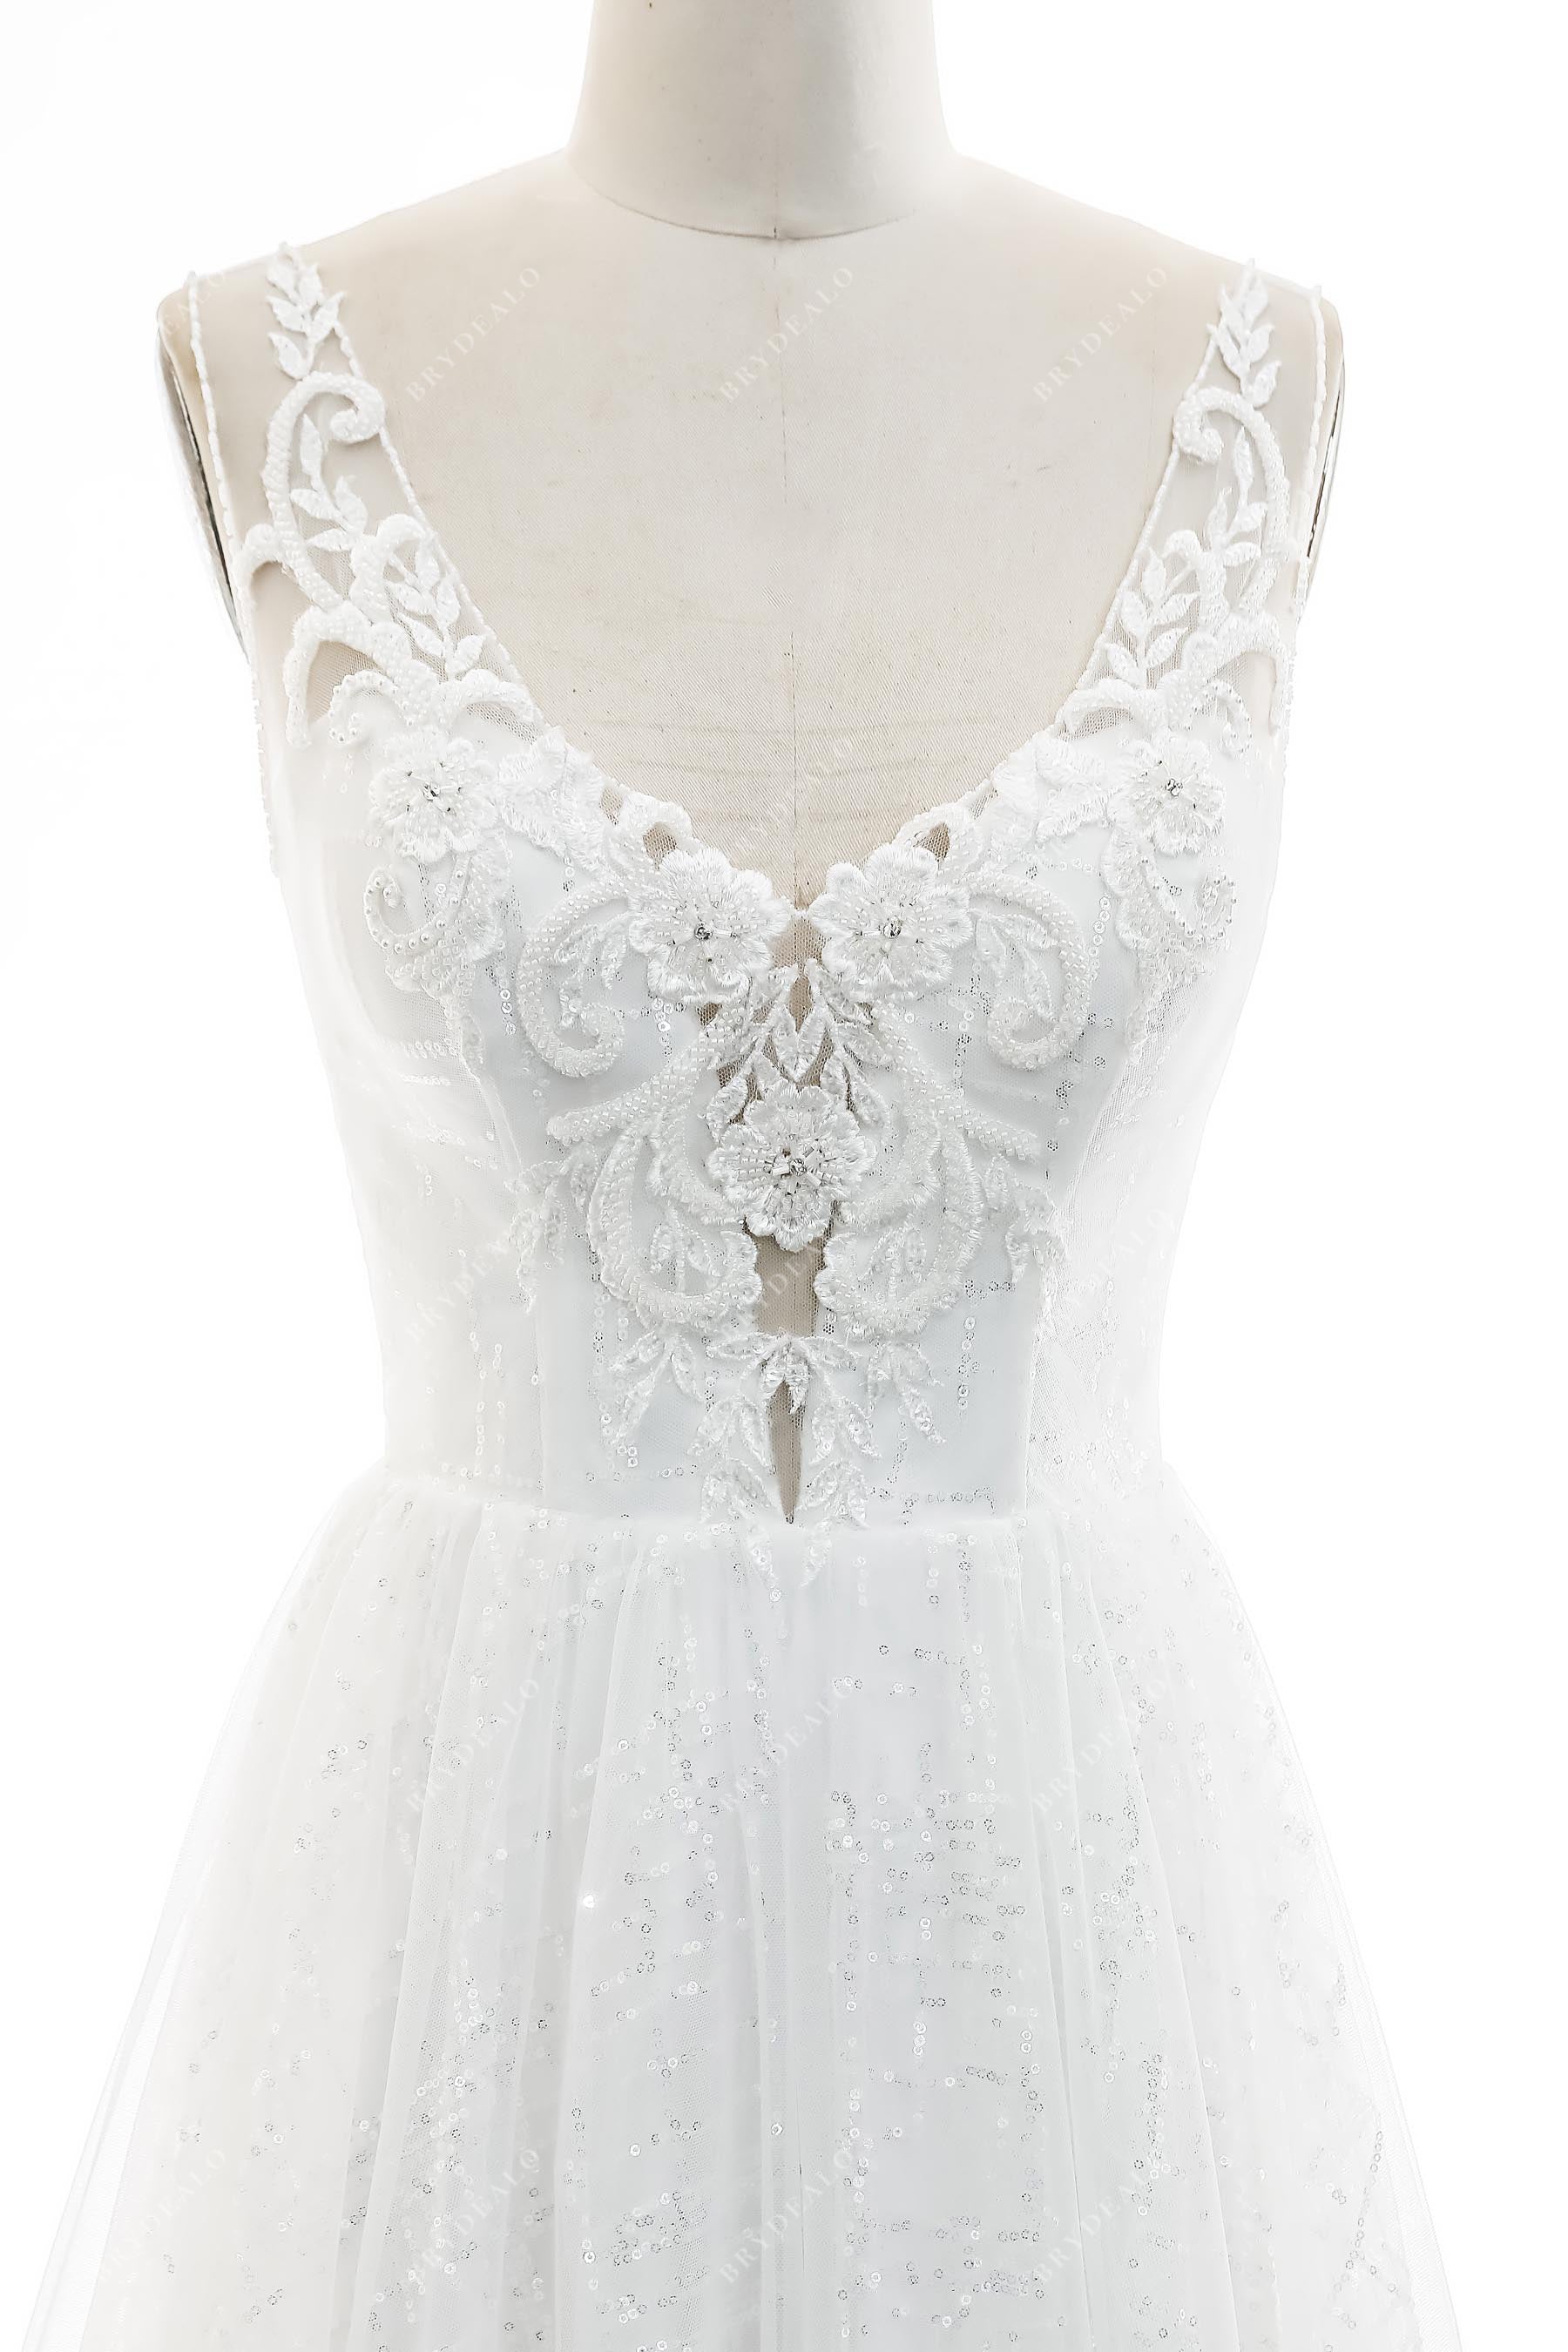 Sleeveless Illusion Neck Beaded Lace Bridal Dress